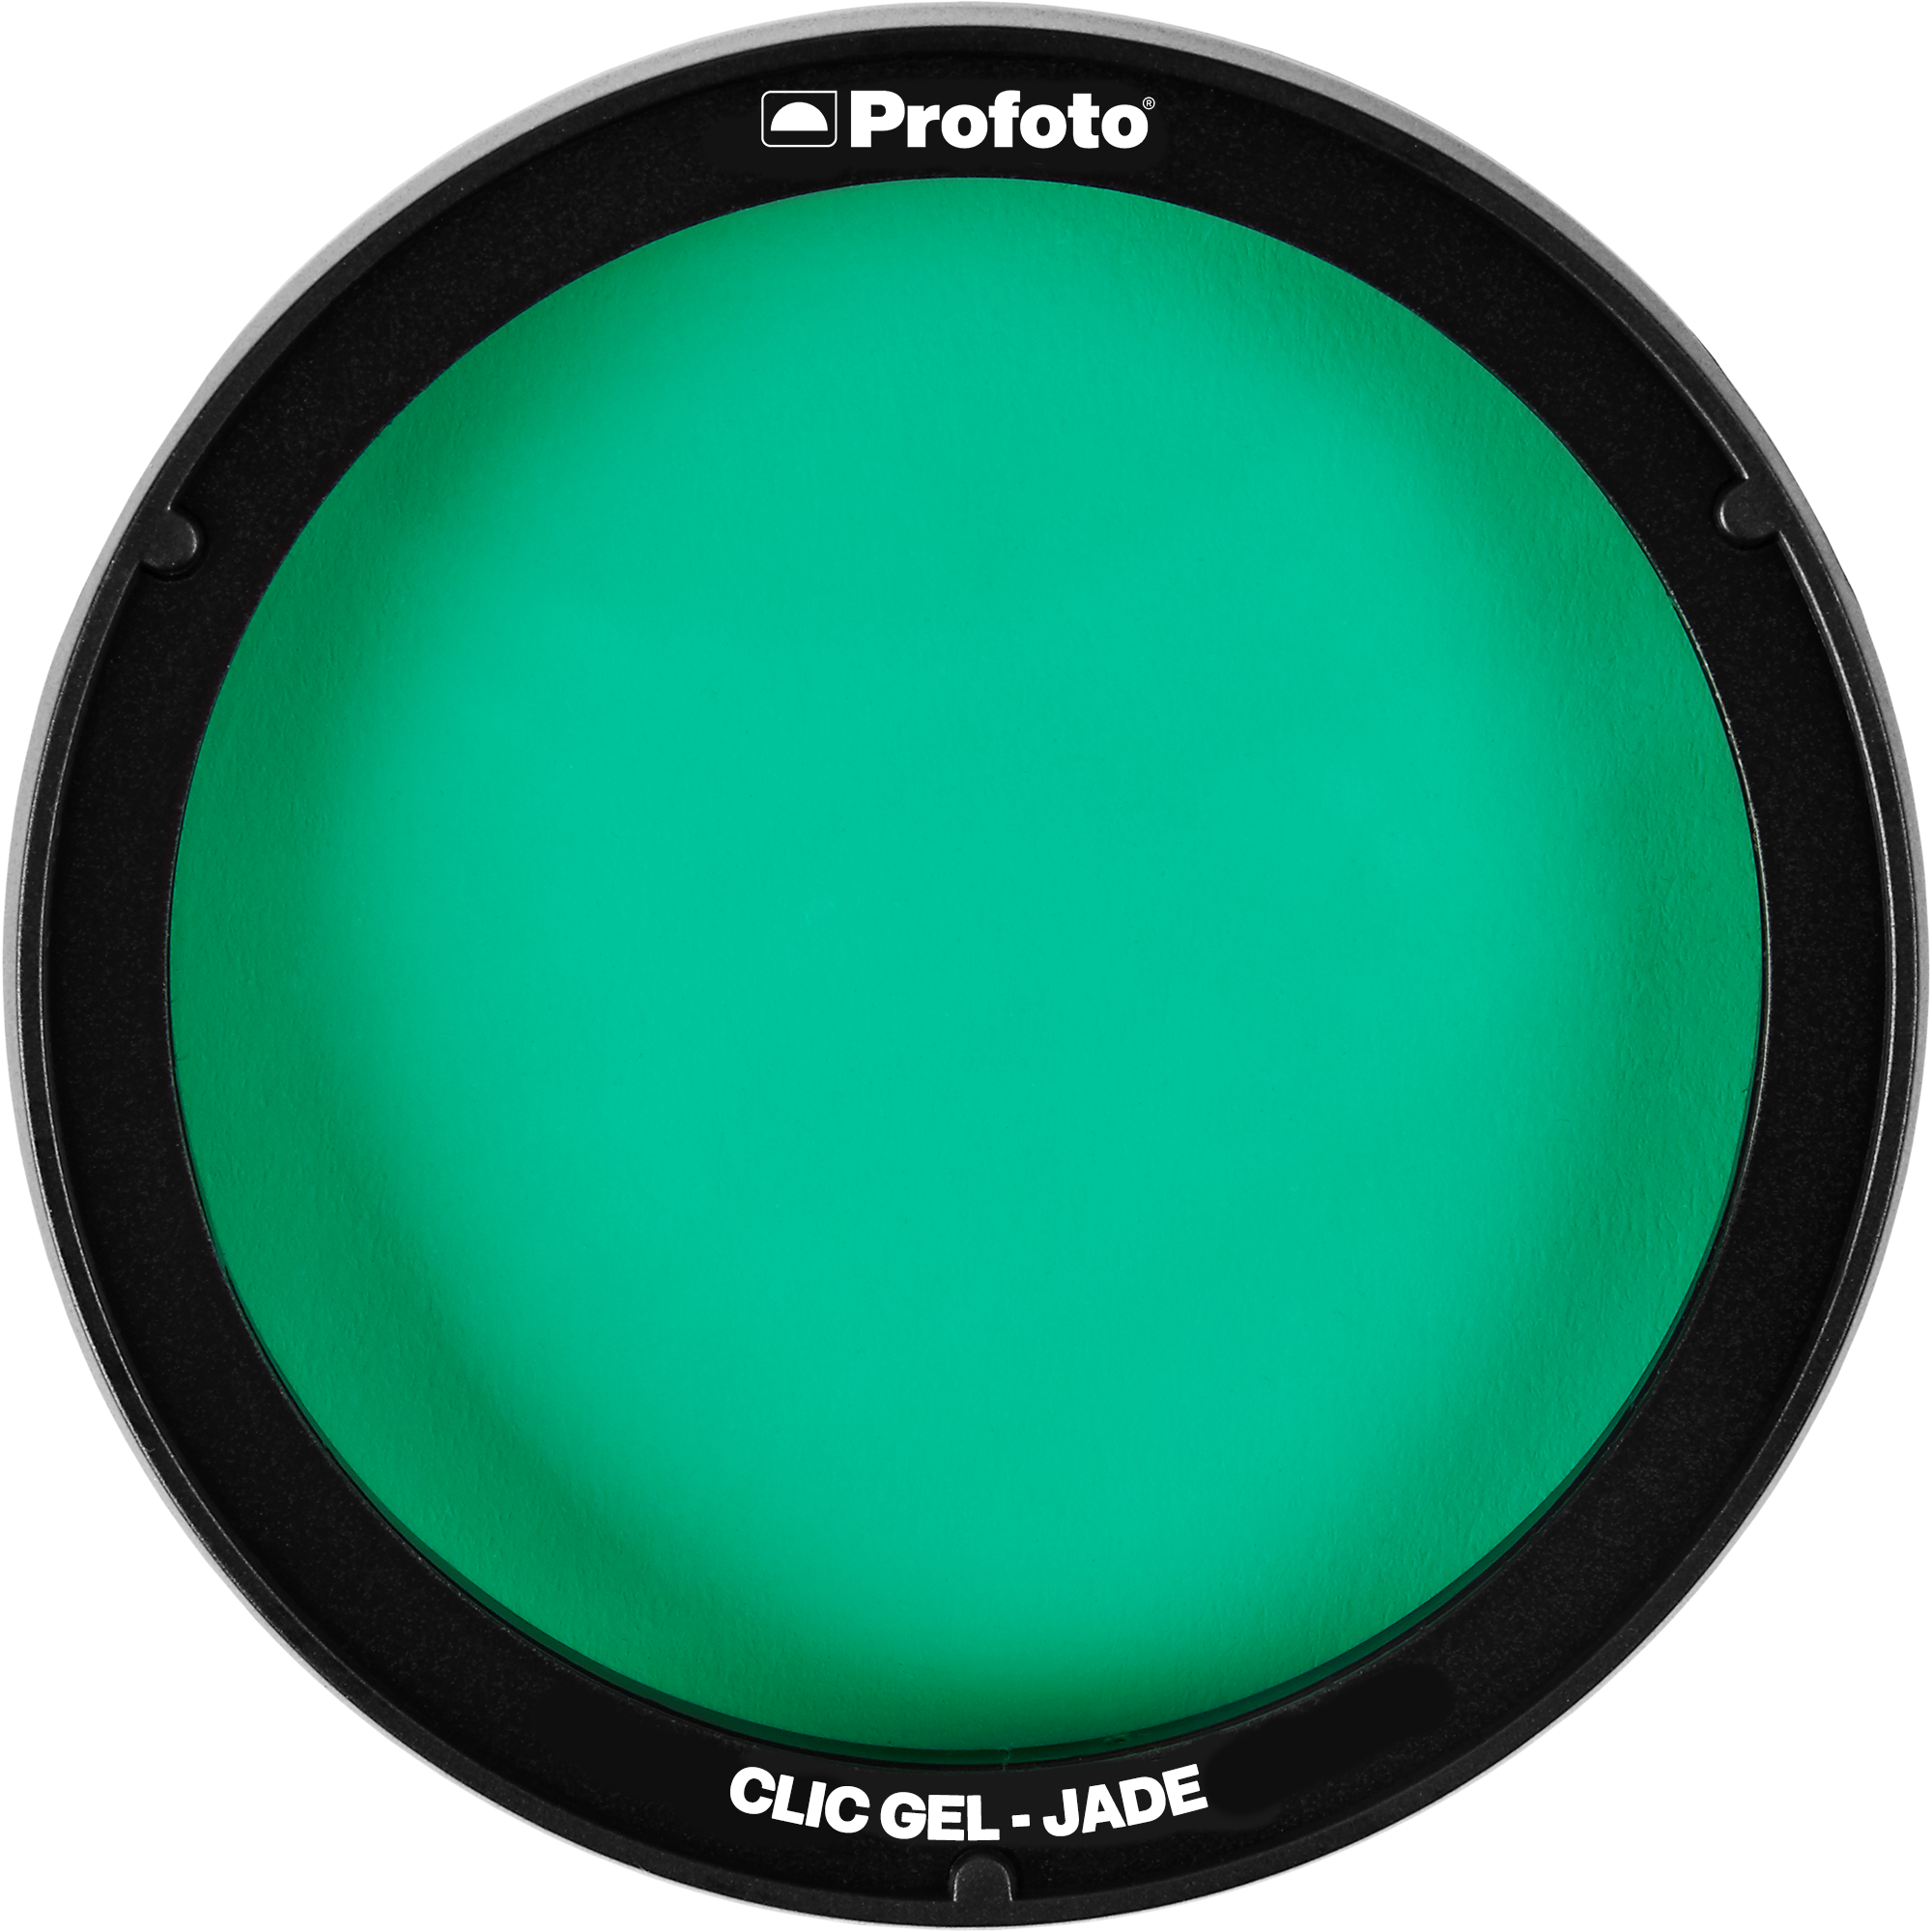 Profoto 101015 Clic Gel Jade